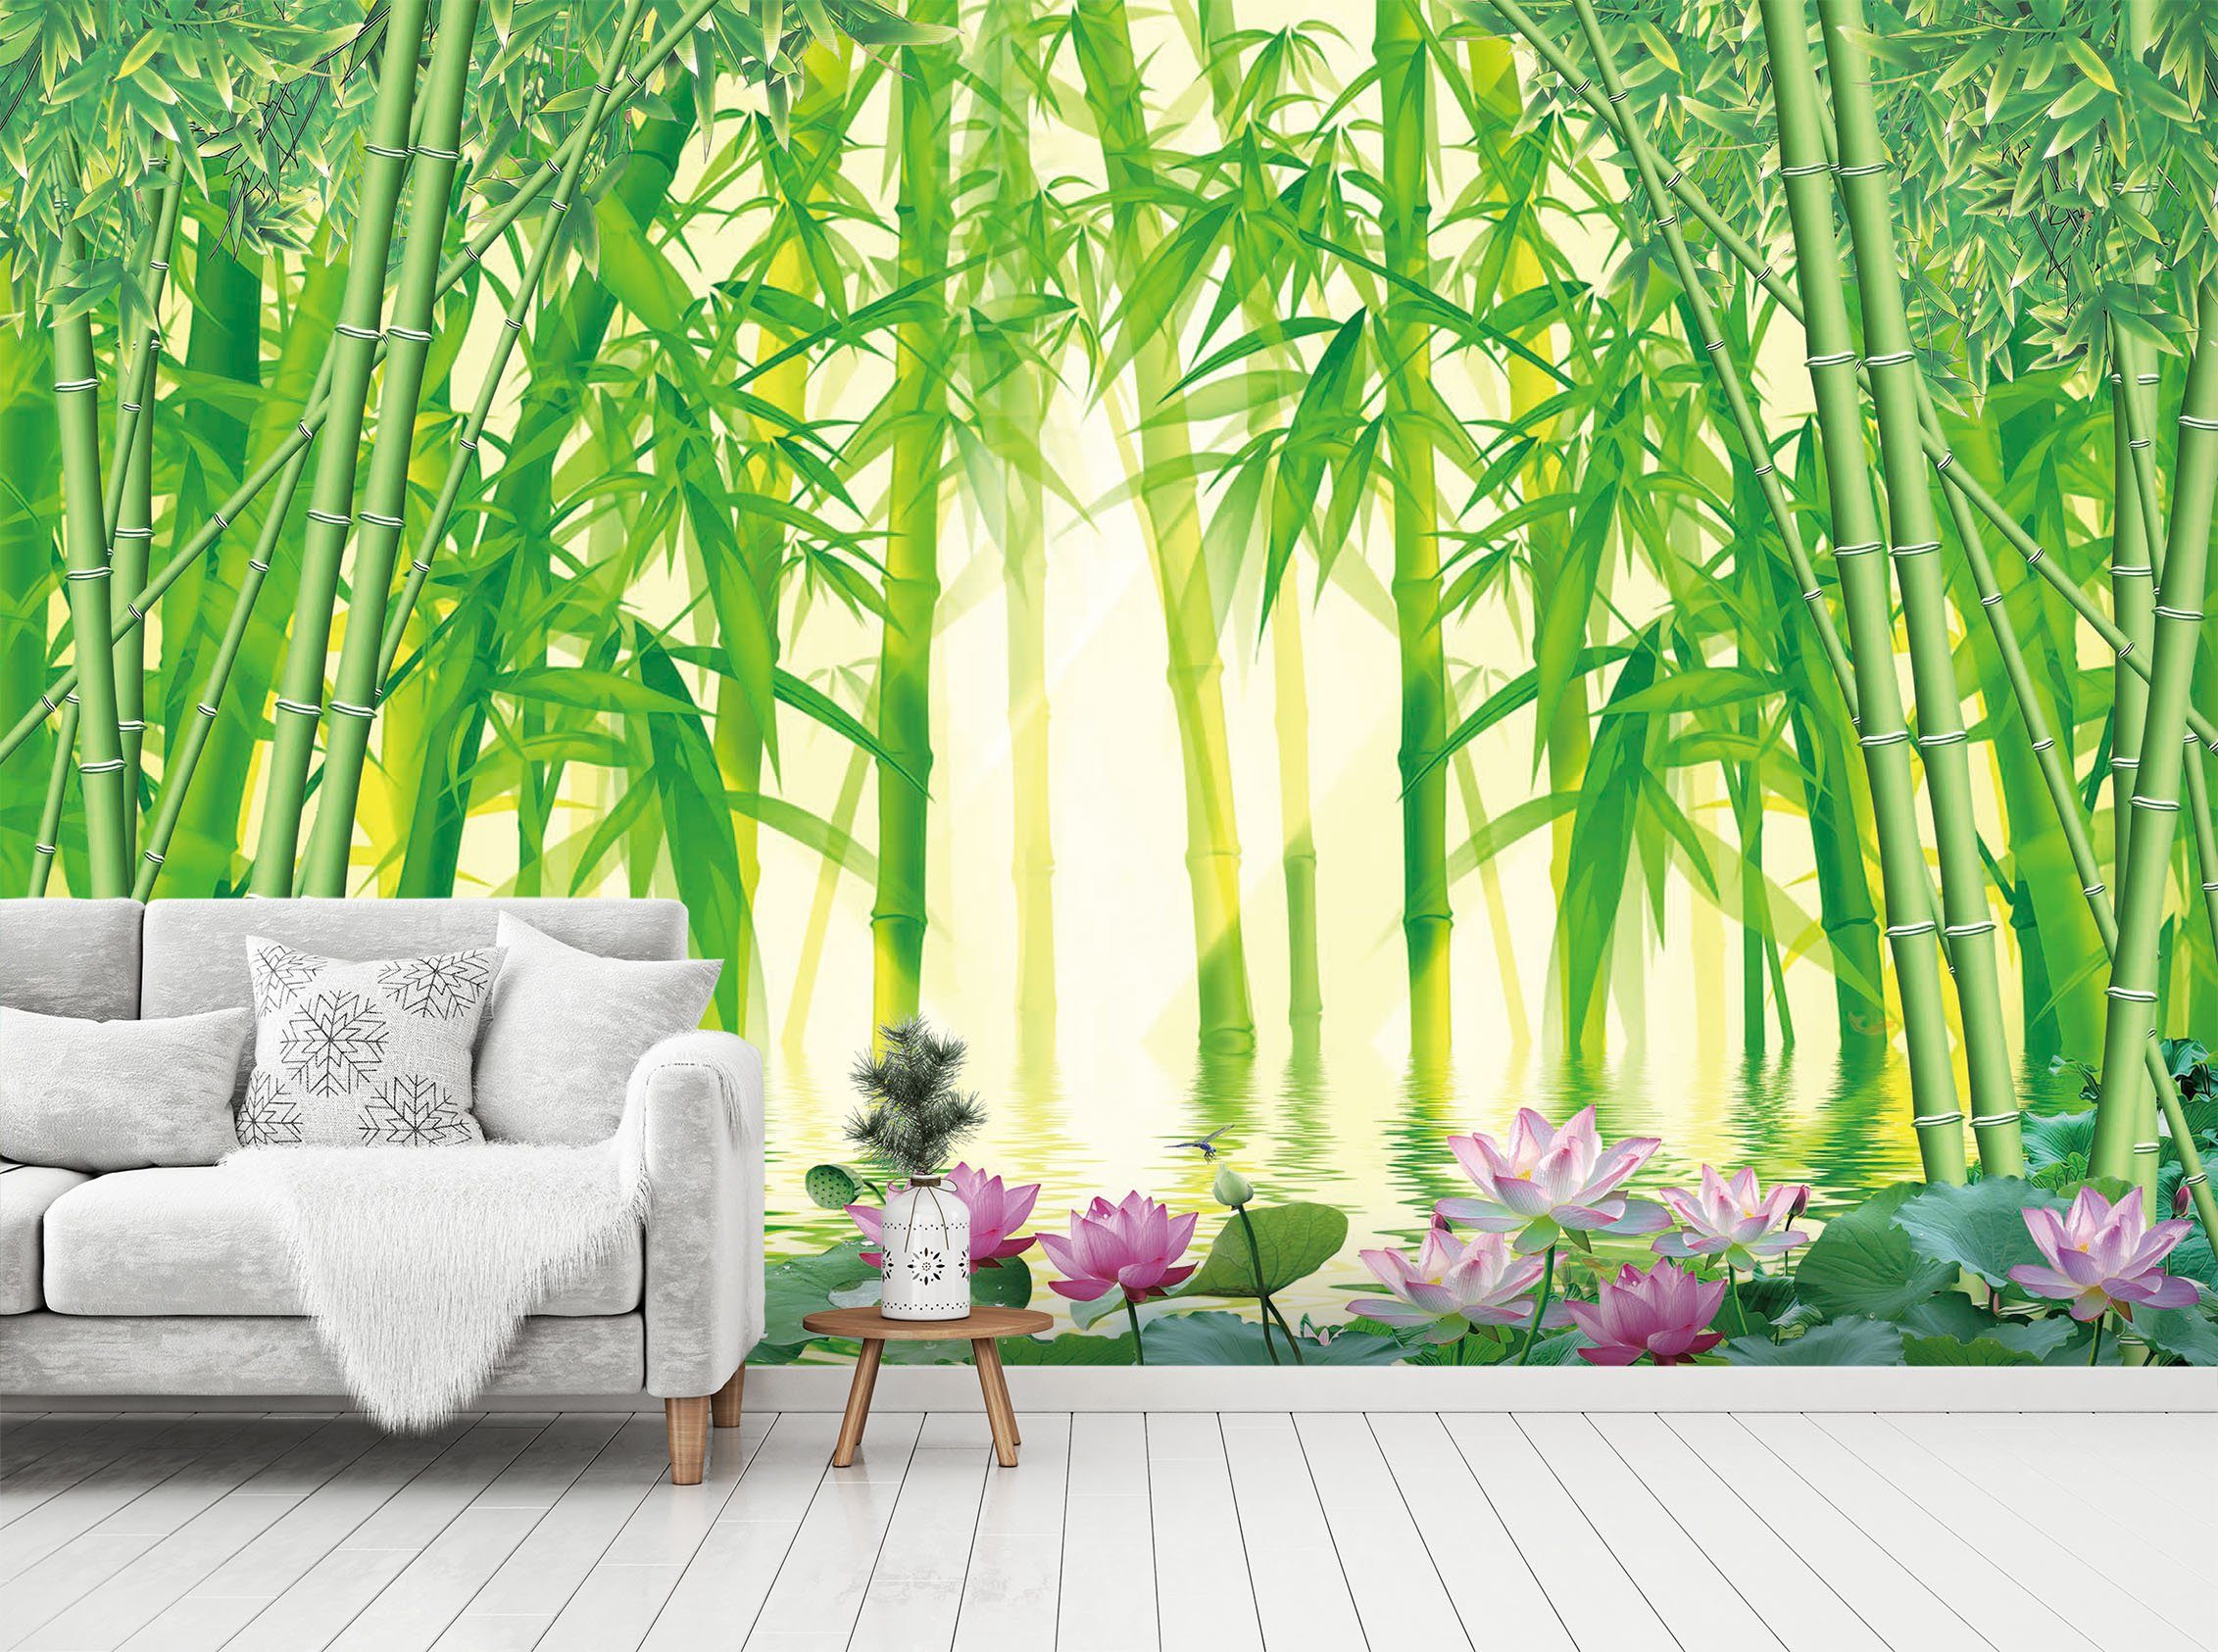 3D Bamboo Forest 1418 Wall Murals Wallpaper AJ Wallpaper 2 